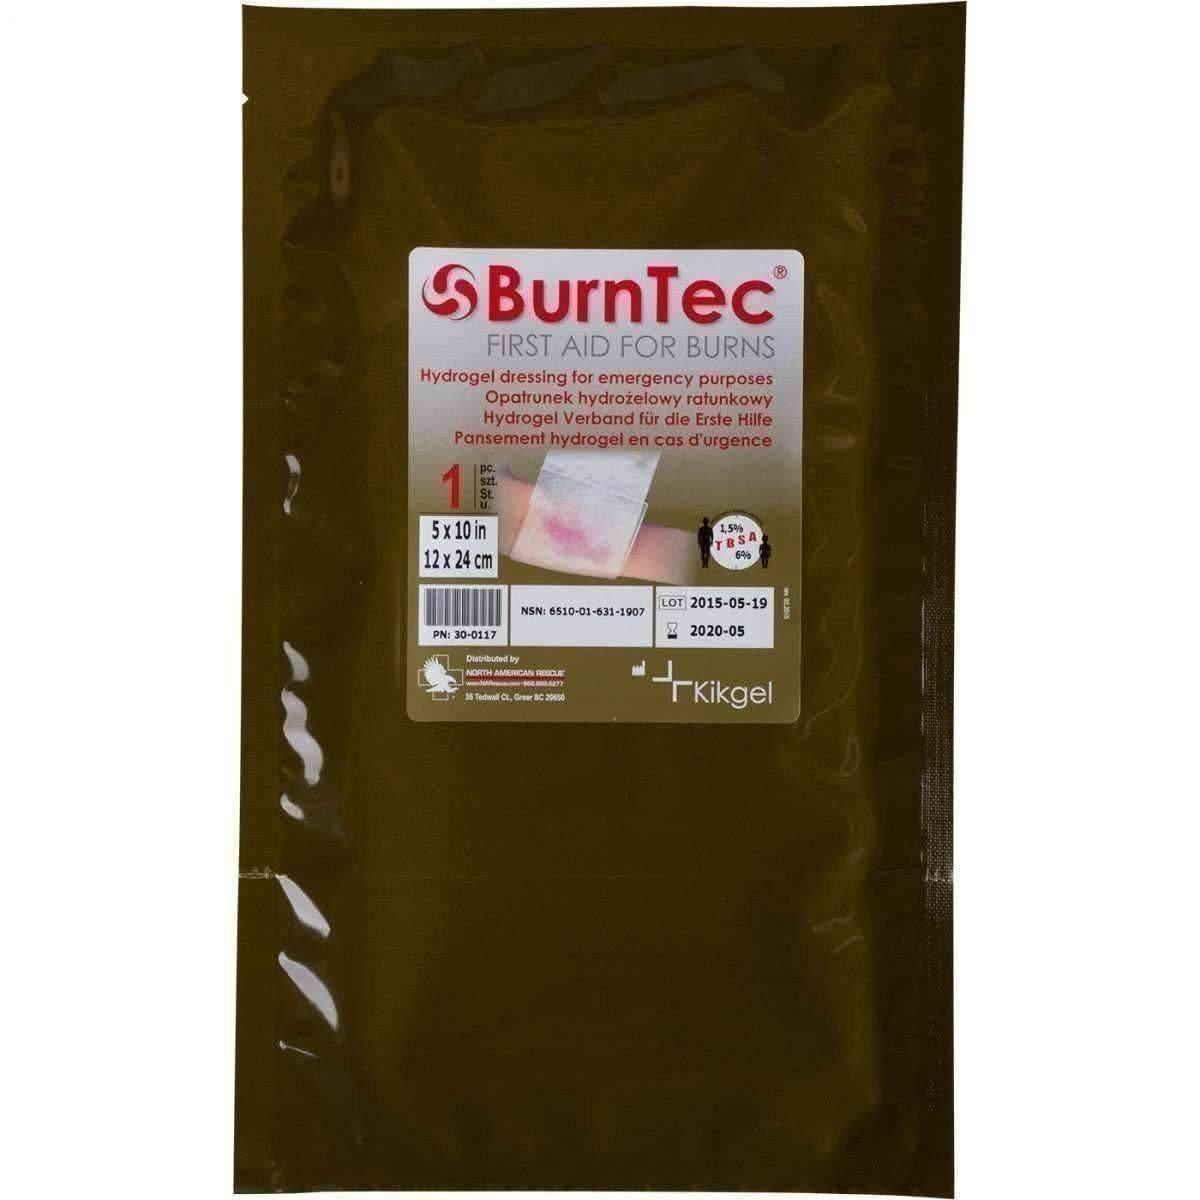 BurnTec Dressing - Vendor